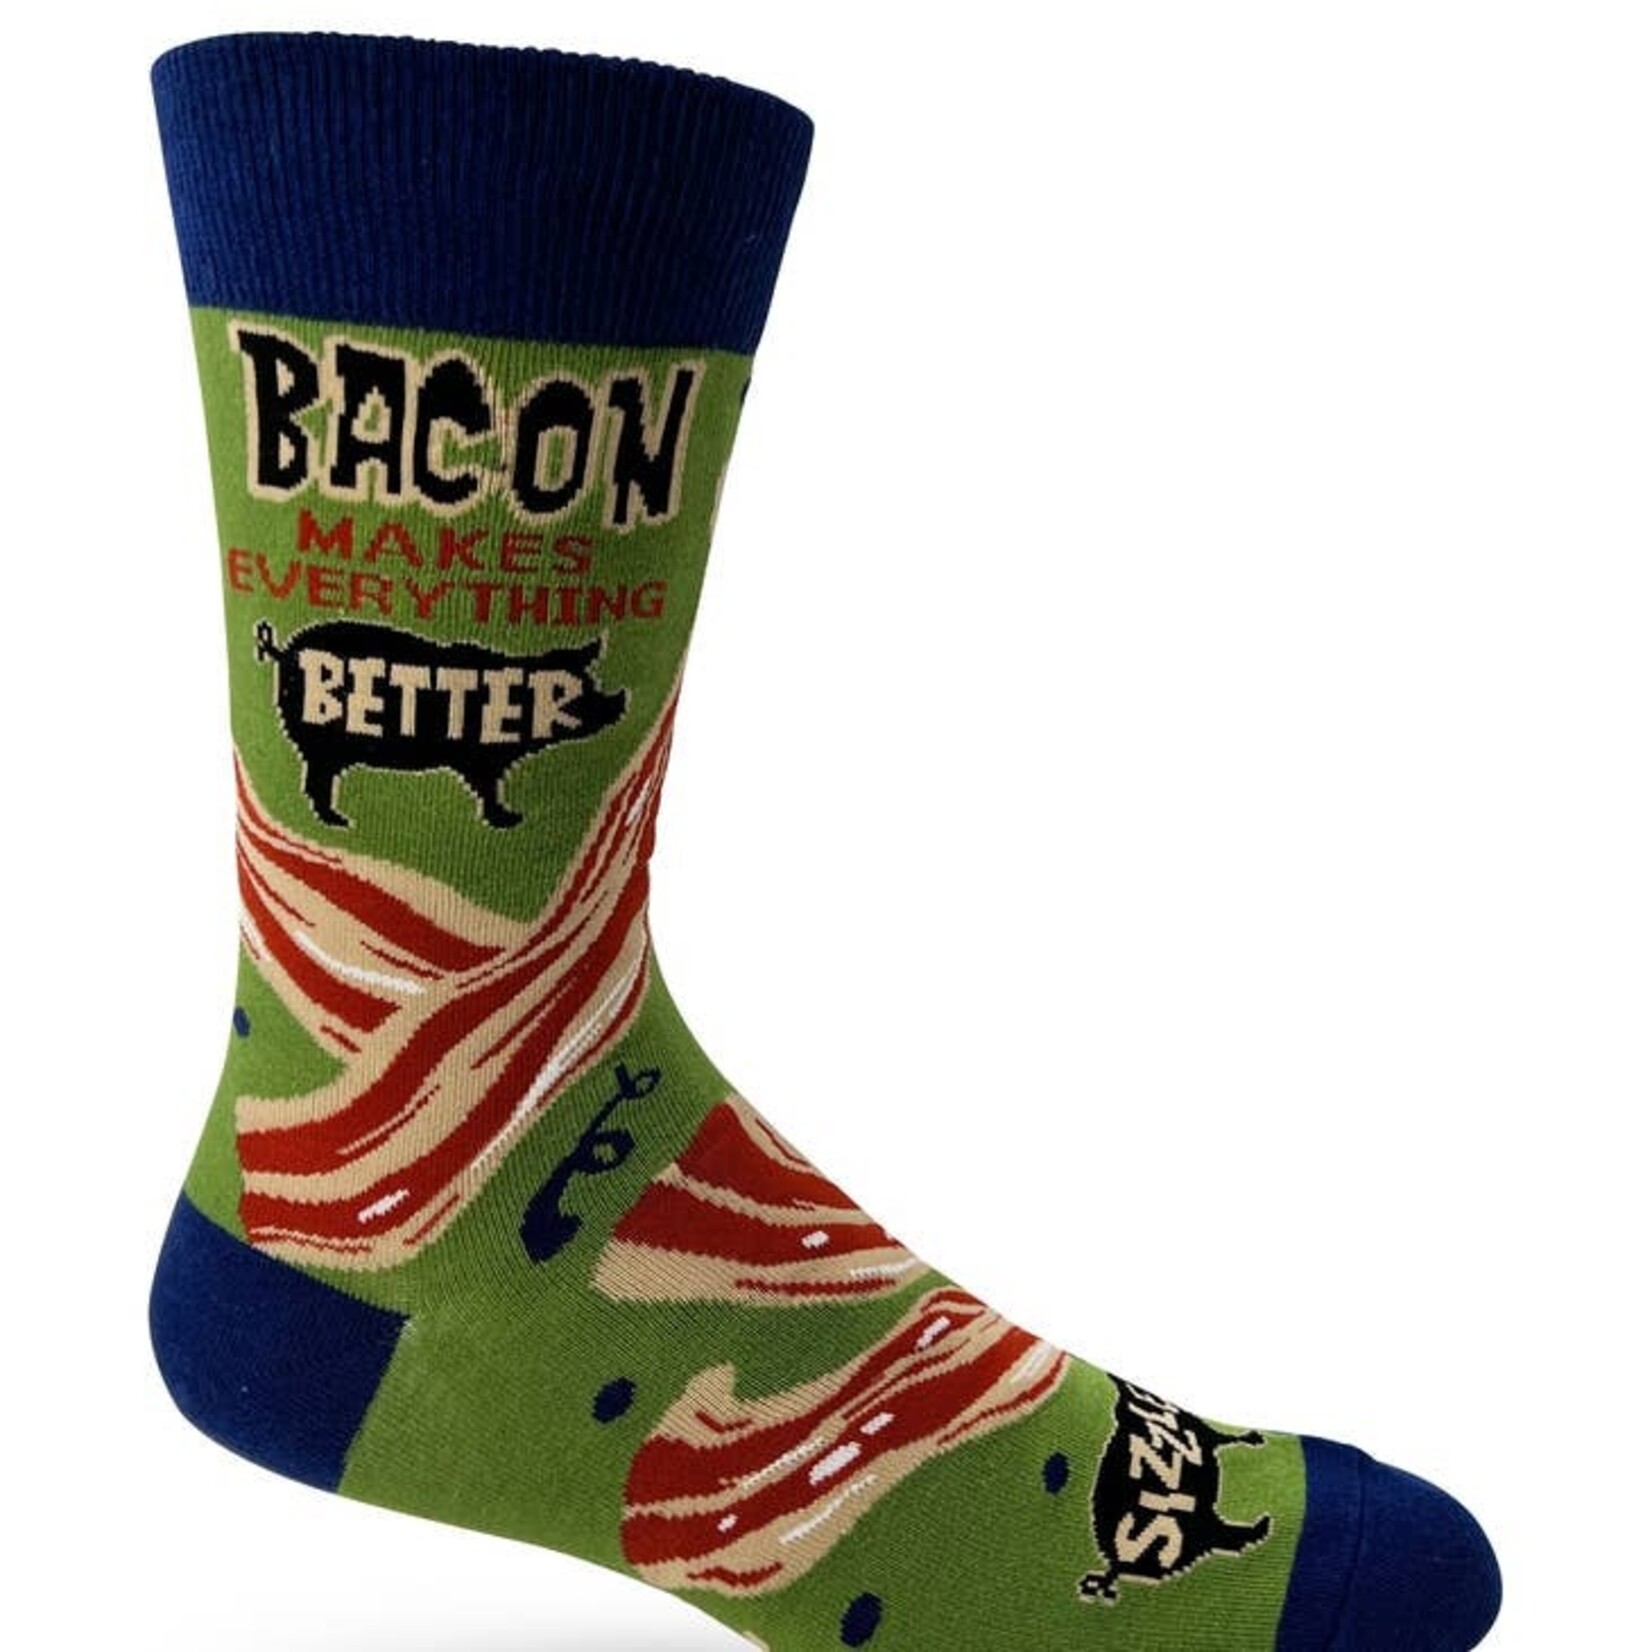 Fabdaz Fabdaz Bacon Makes Everything Better Men's Novelty Crew Socks